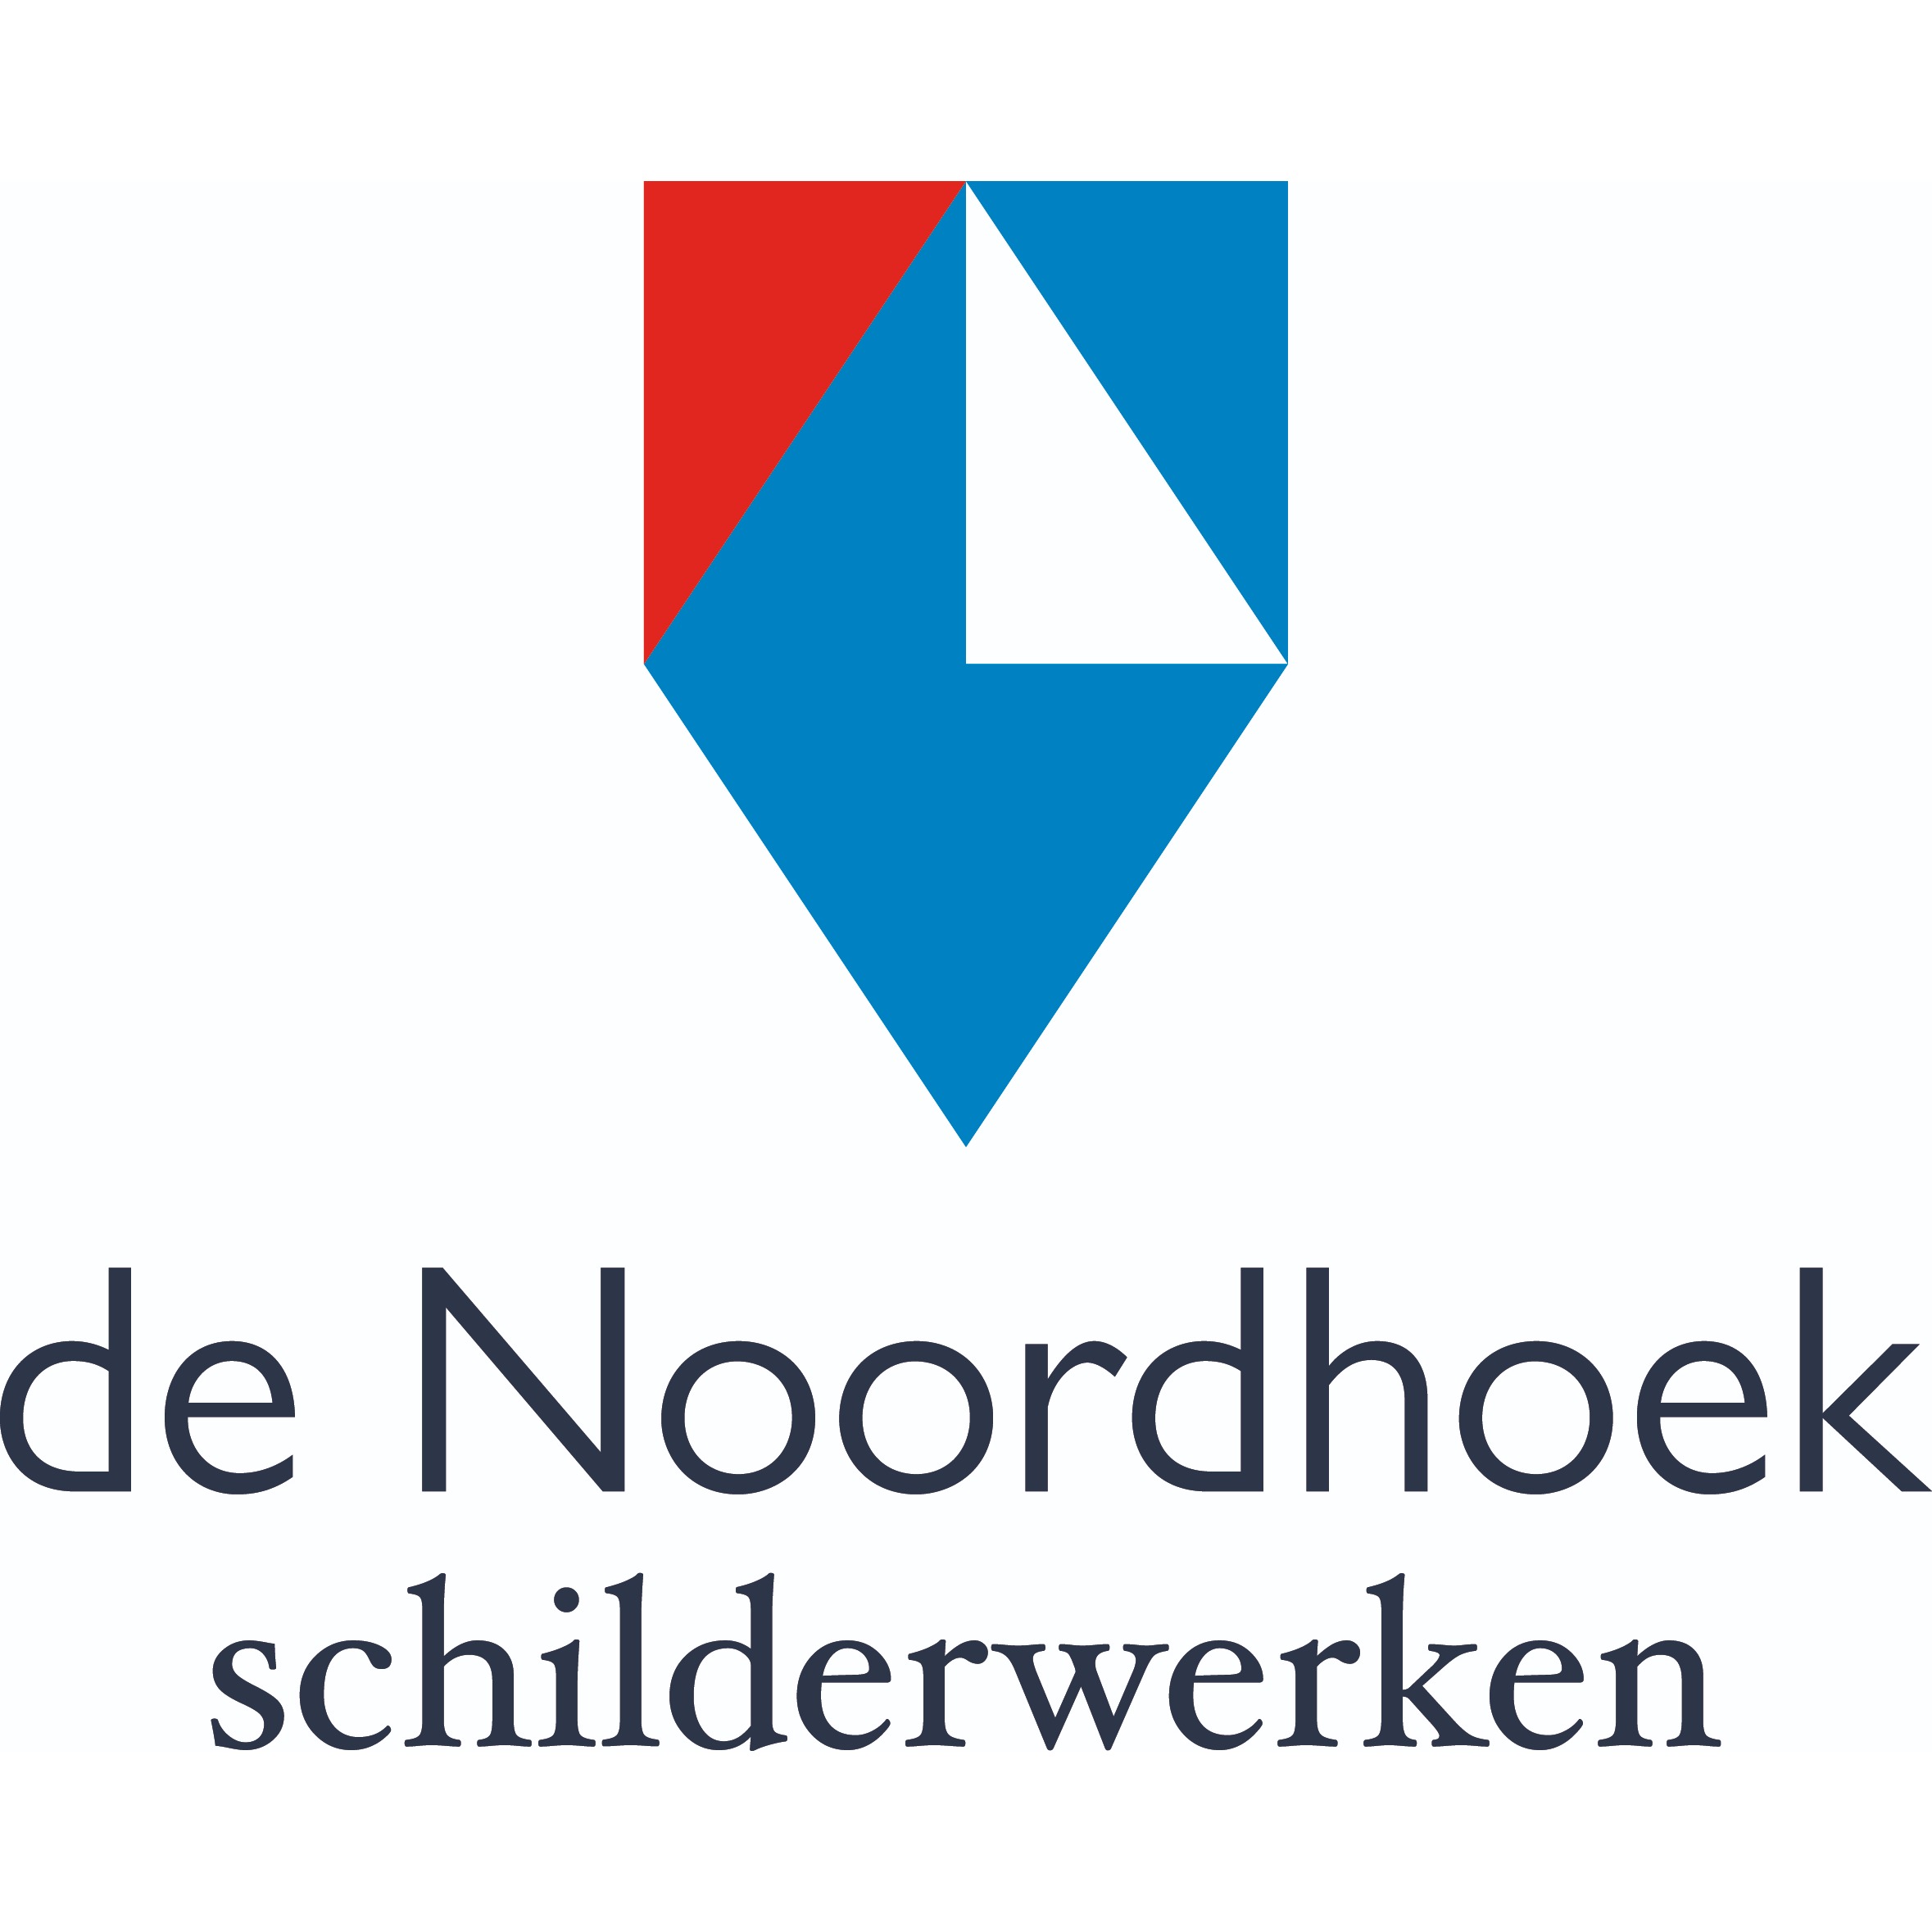 De Noordhoek Schilderwerken Logo